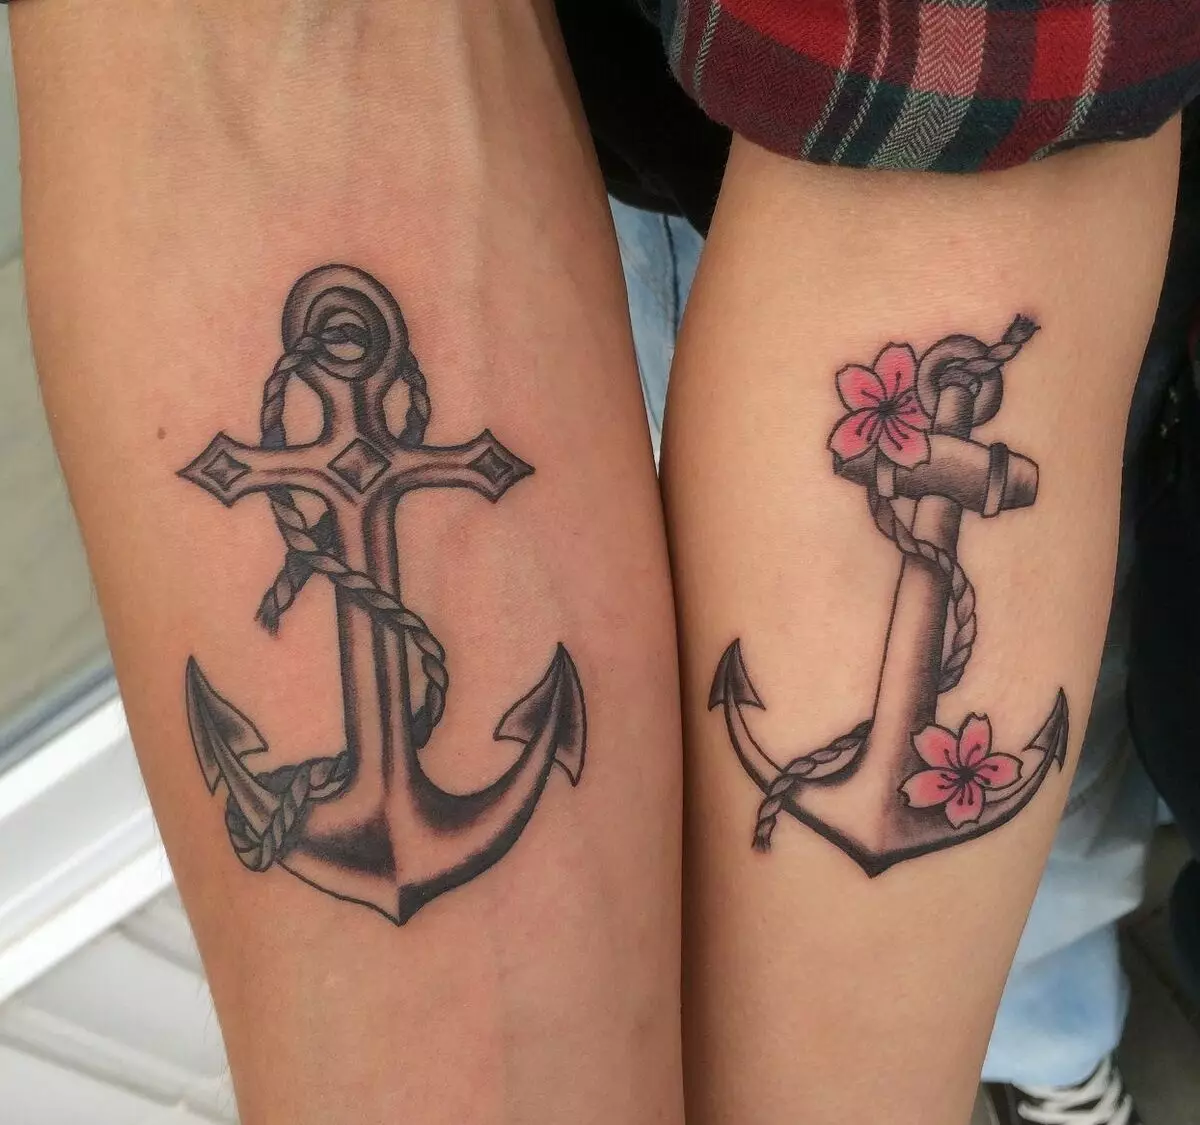 Άγκυρα Τατουάζ: Η αξία των τατουάζ και σκίτσα, τατουάζ για τα κορίτσια και για τους άνδρες, τατουάζ στο χέρι και το πόδι, στο δάχτυλο και στον καρπό, στο στήθος και σε άλλες ζώνες 14162_64